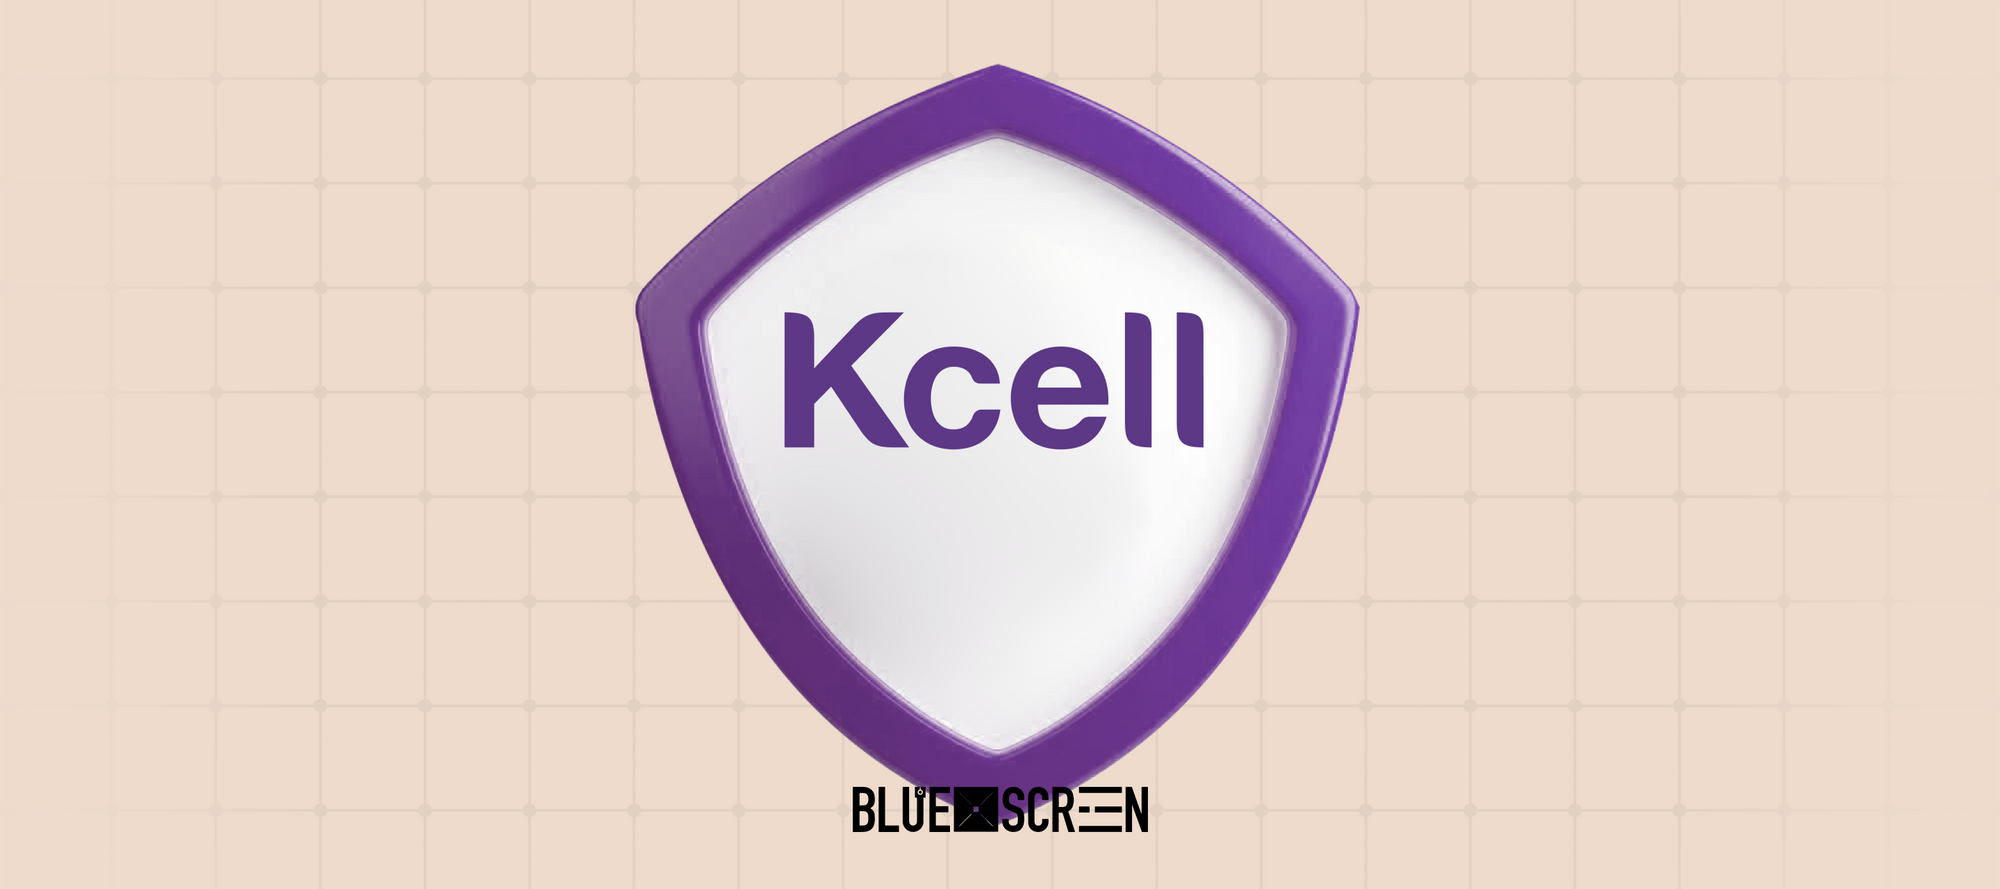 Kcell усиливает защиту своих систем и сервисов